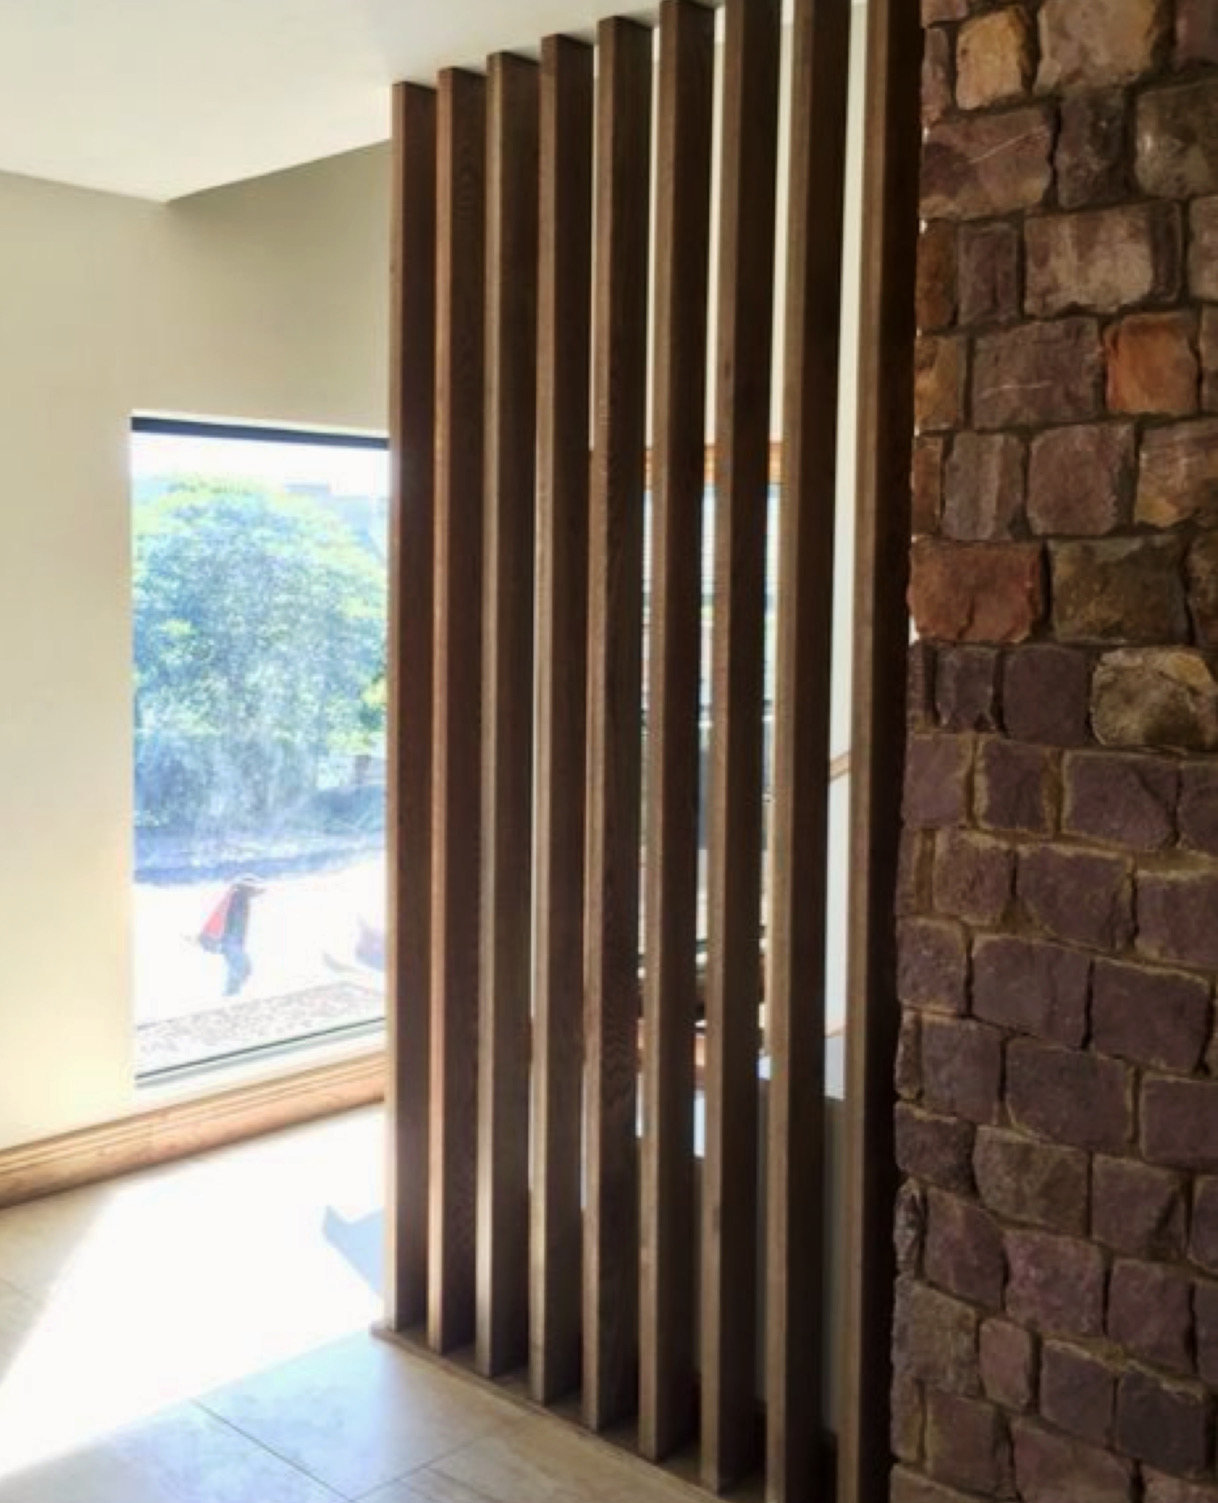 Parete listelli in legno dividere il soggiorno arredare con il legno per  interni - XLAB Design